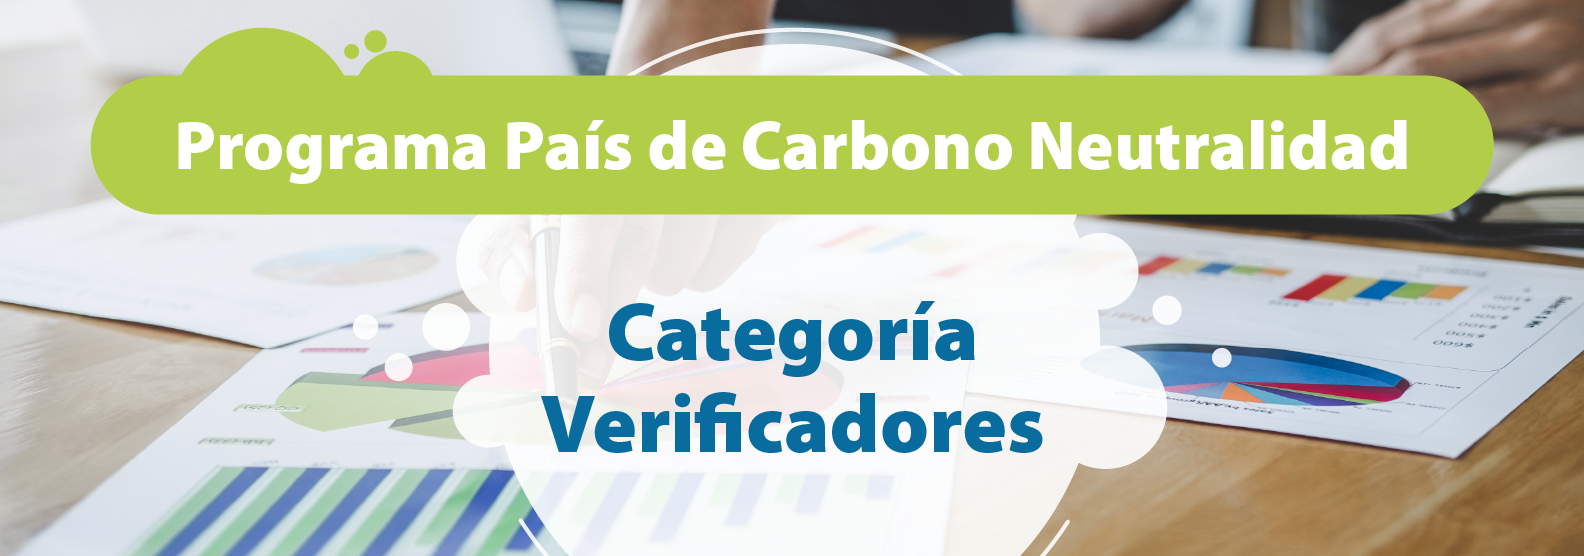 Programa País de Carbono Neutralidad, Categoría Verificadores